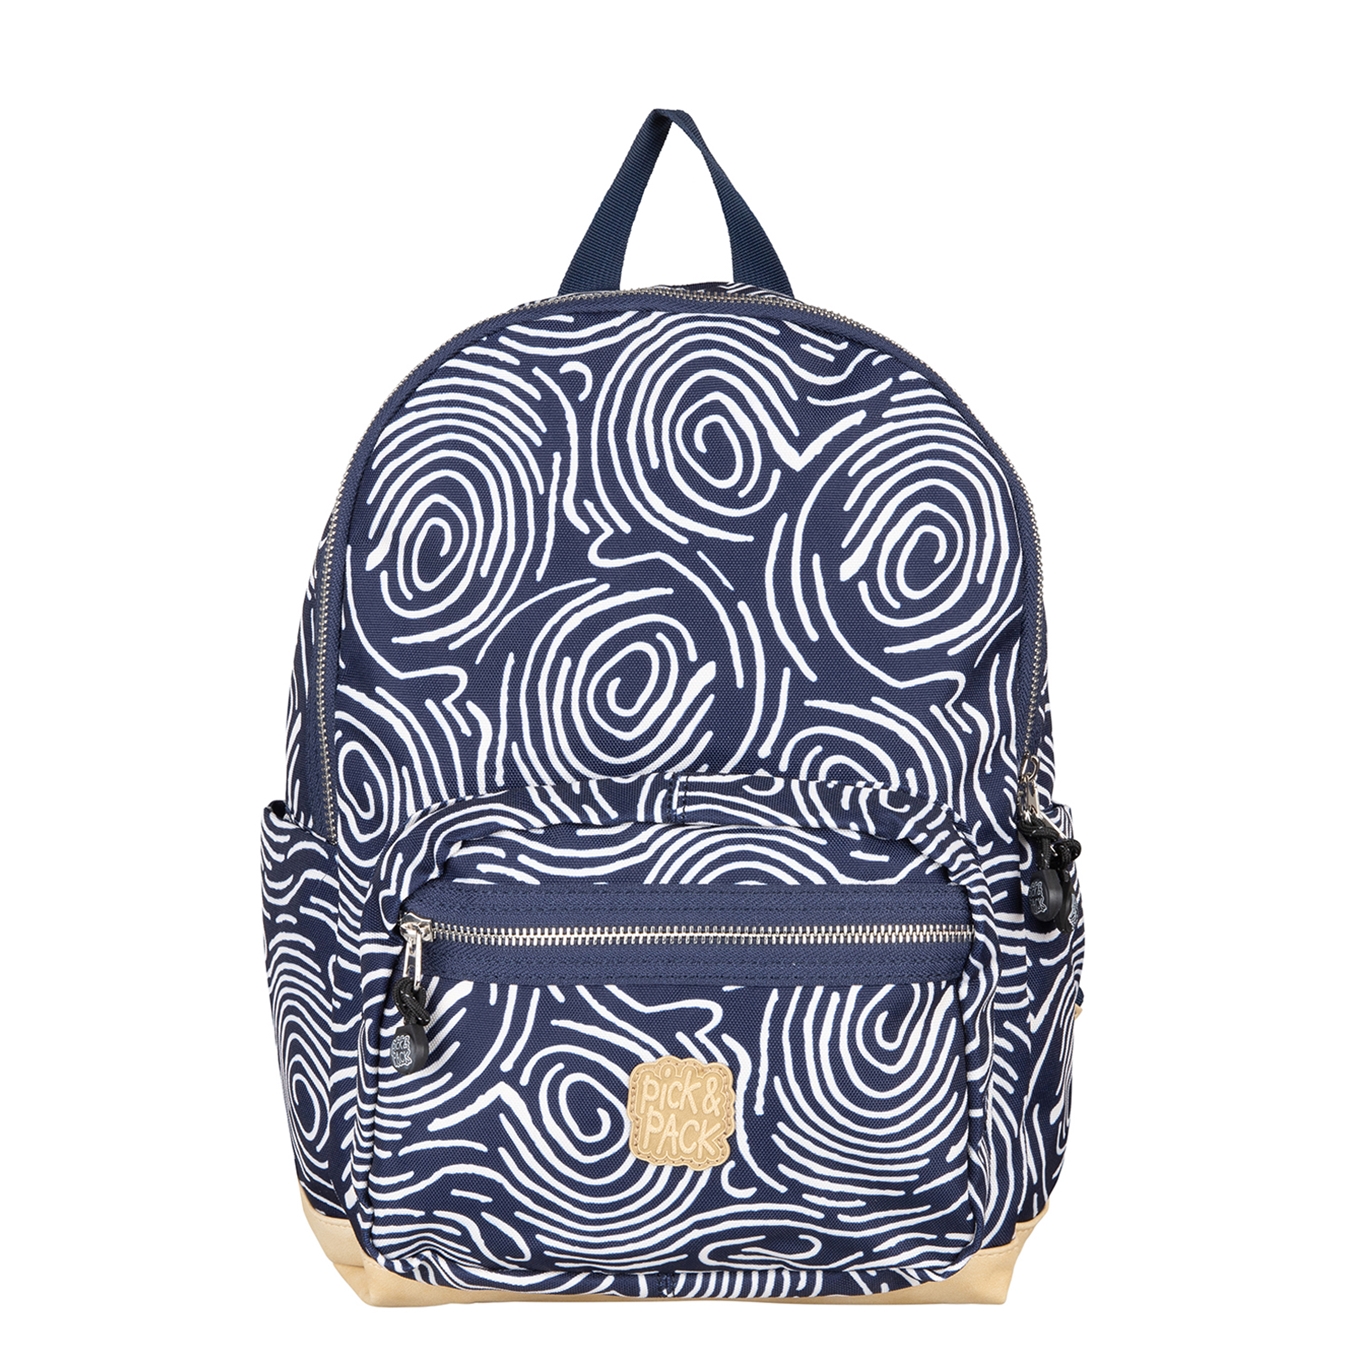 Kano passend Is aan het huilen Schooltas voor de basisschool kopen? | Travelbags.nl